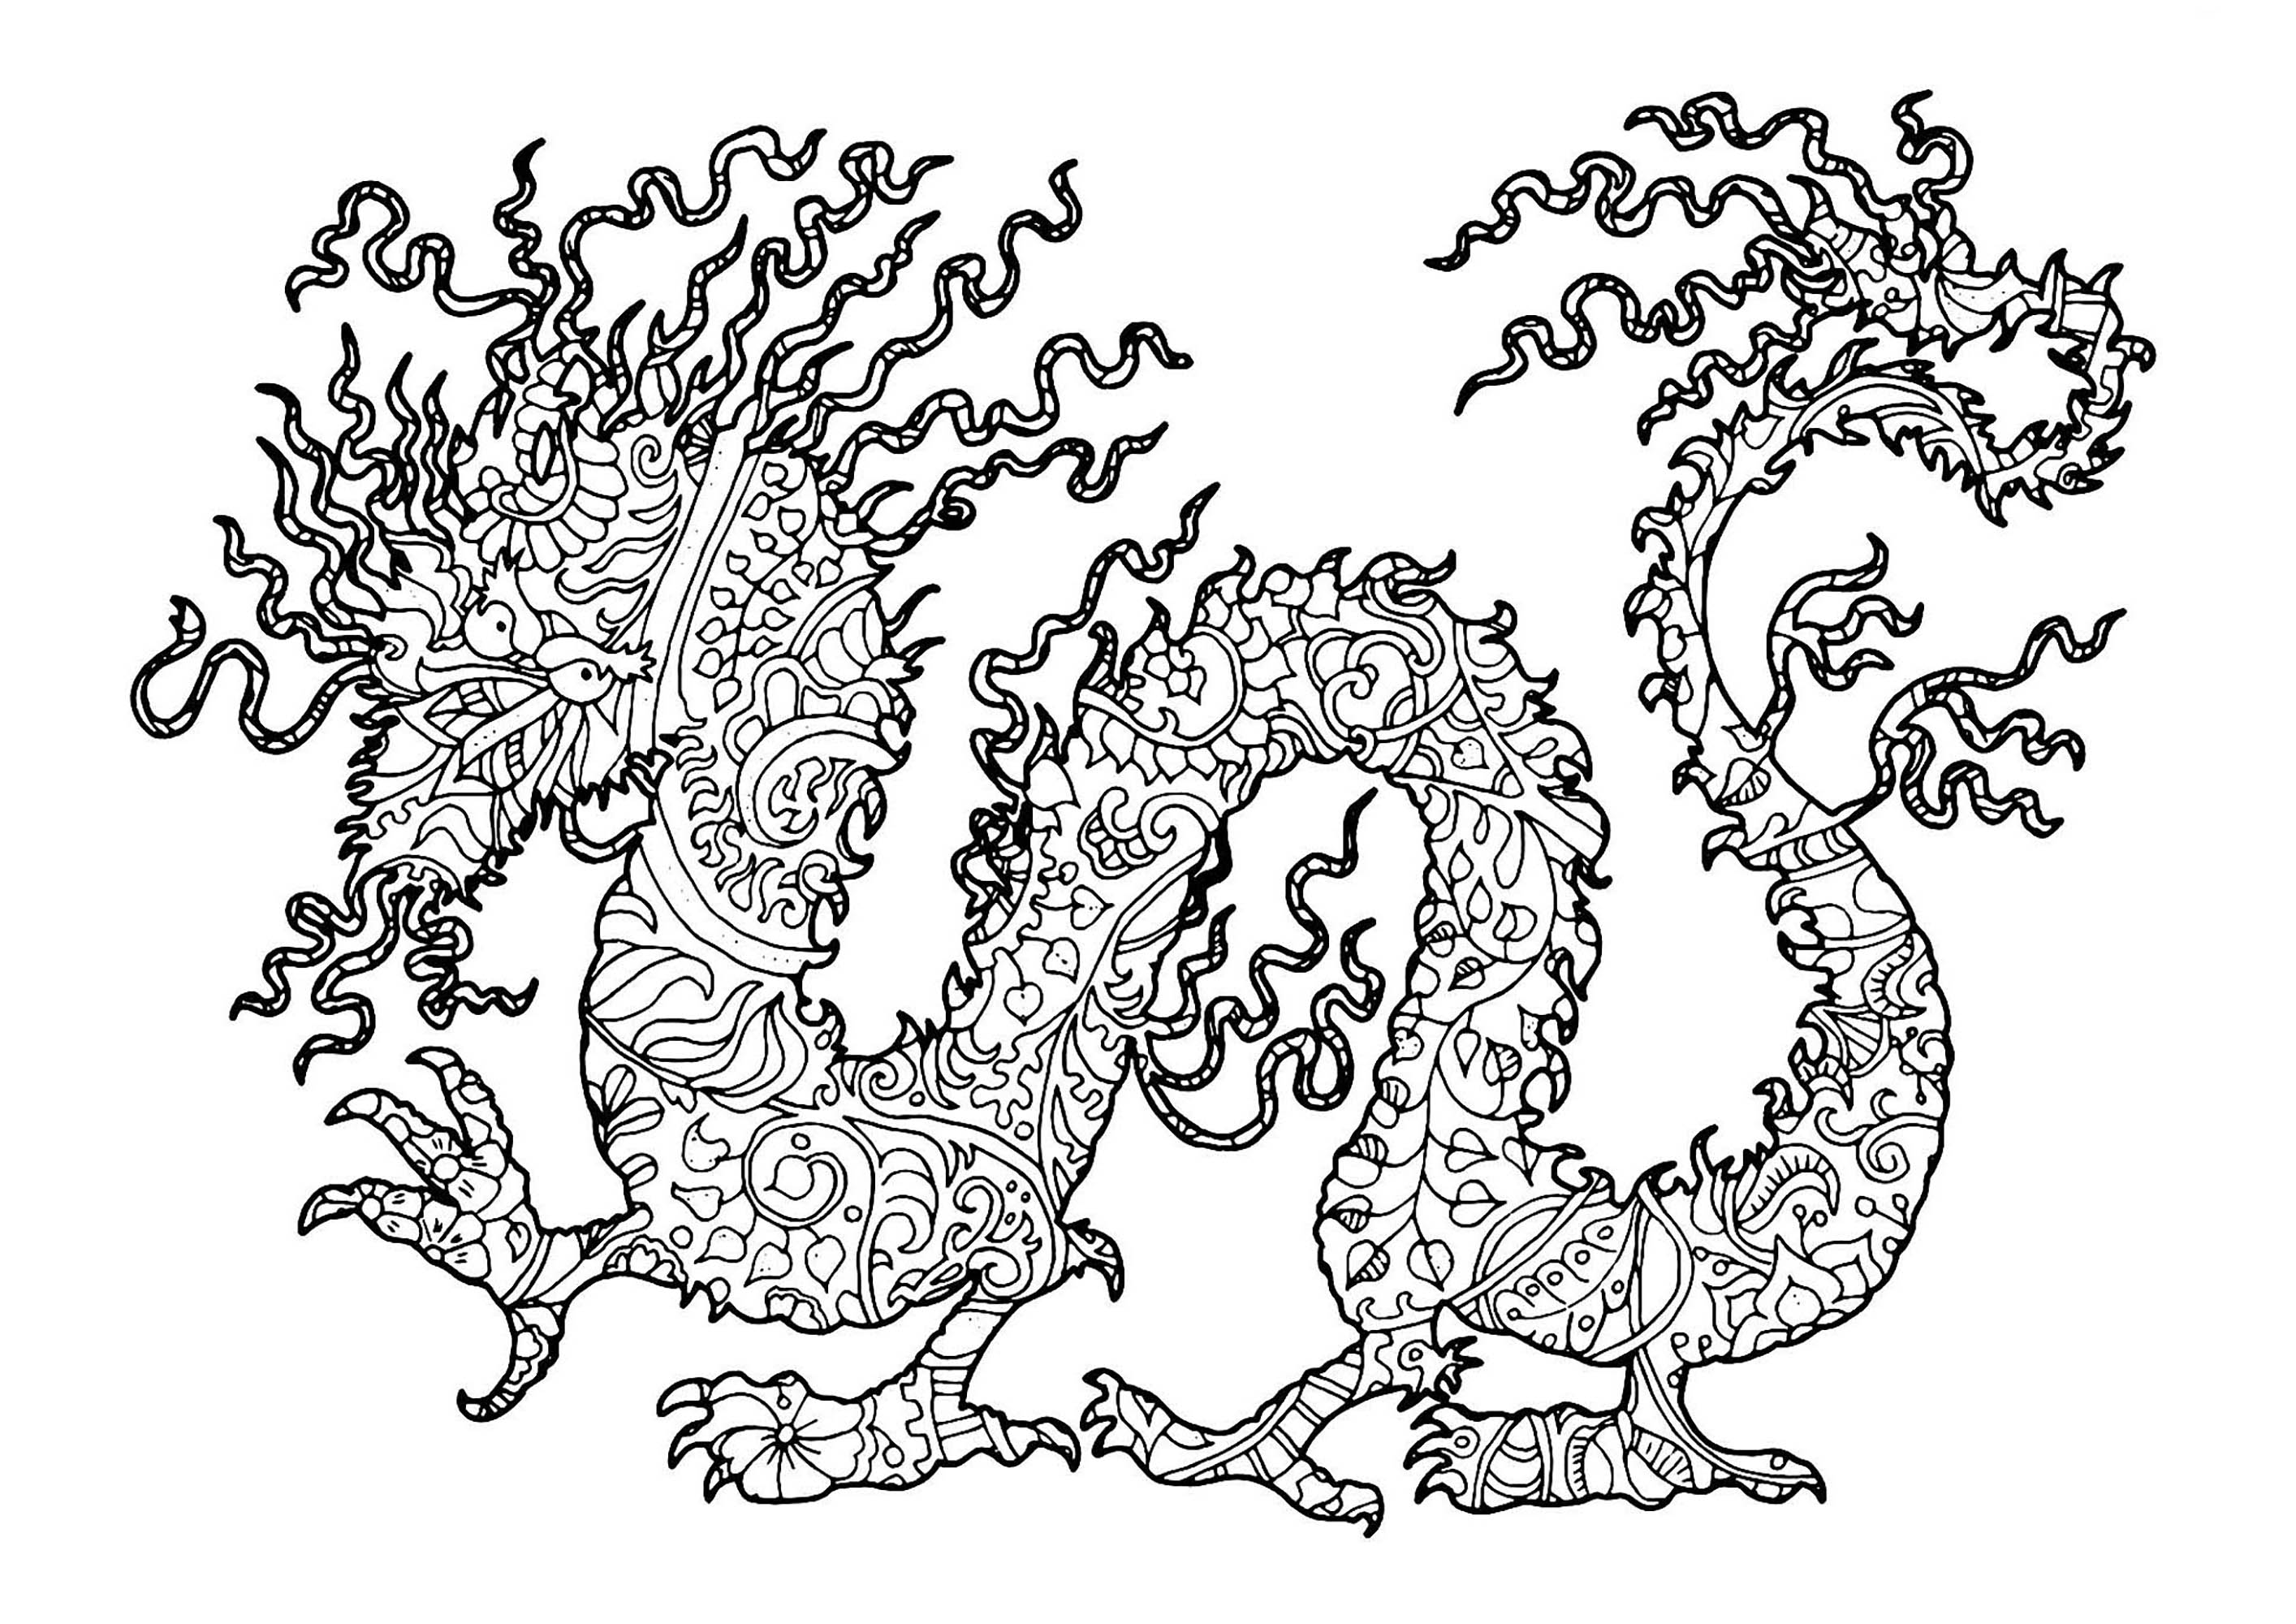 Desenhos incríveis para colorir de Dragões para baixar, Fonte : 123rf   Artista : Vera Petruk